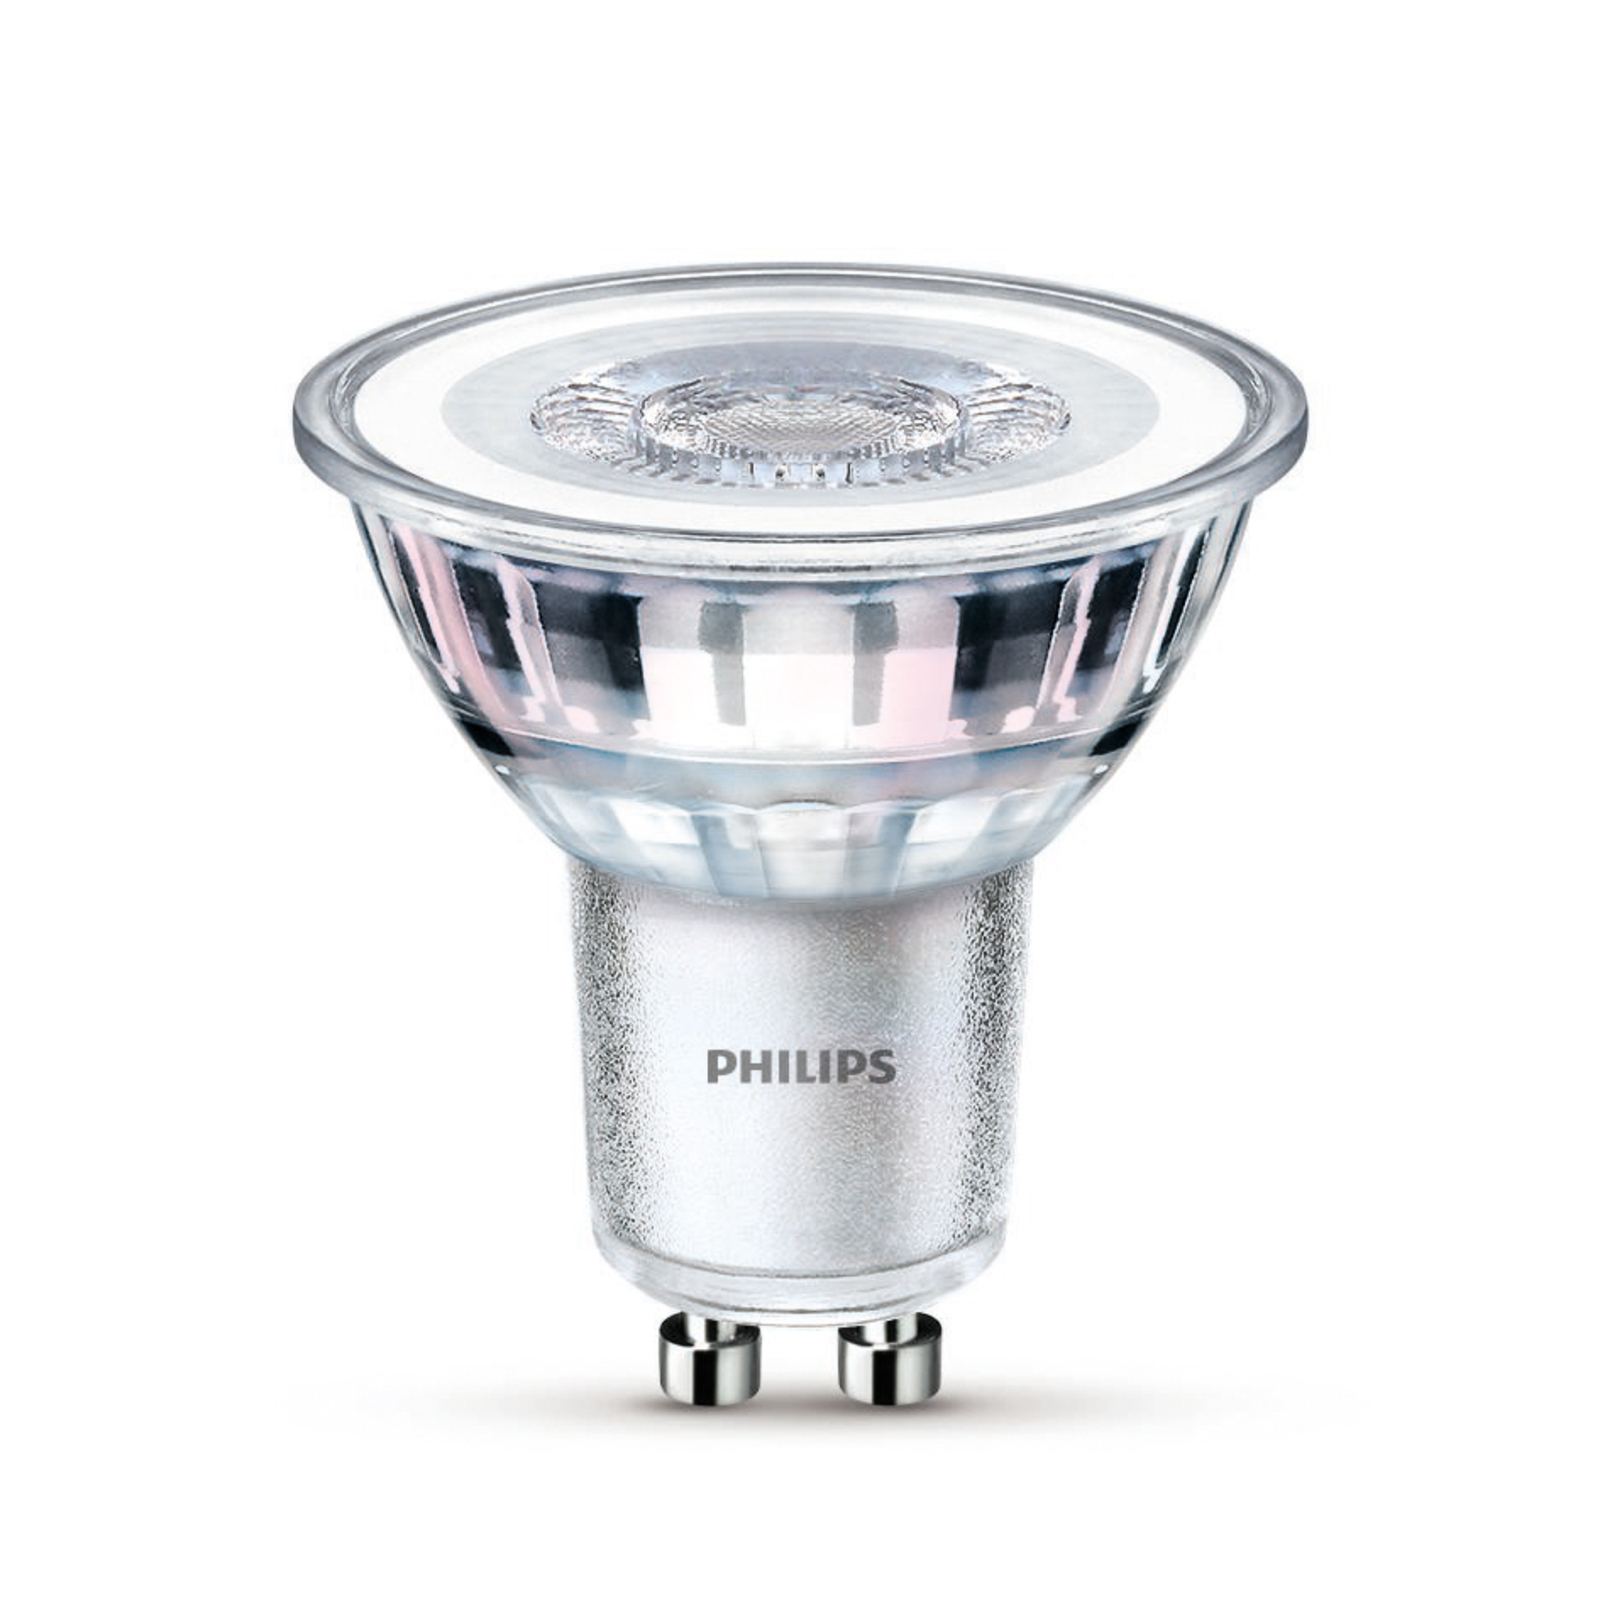 Philips LED лампа GU10 4,6W 355lm 827 clear 36° 3бр